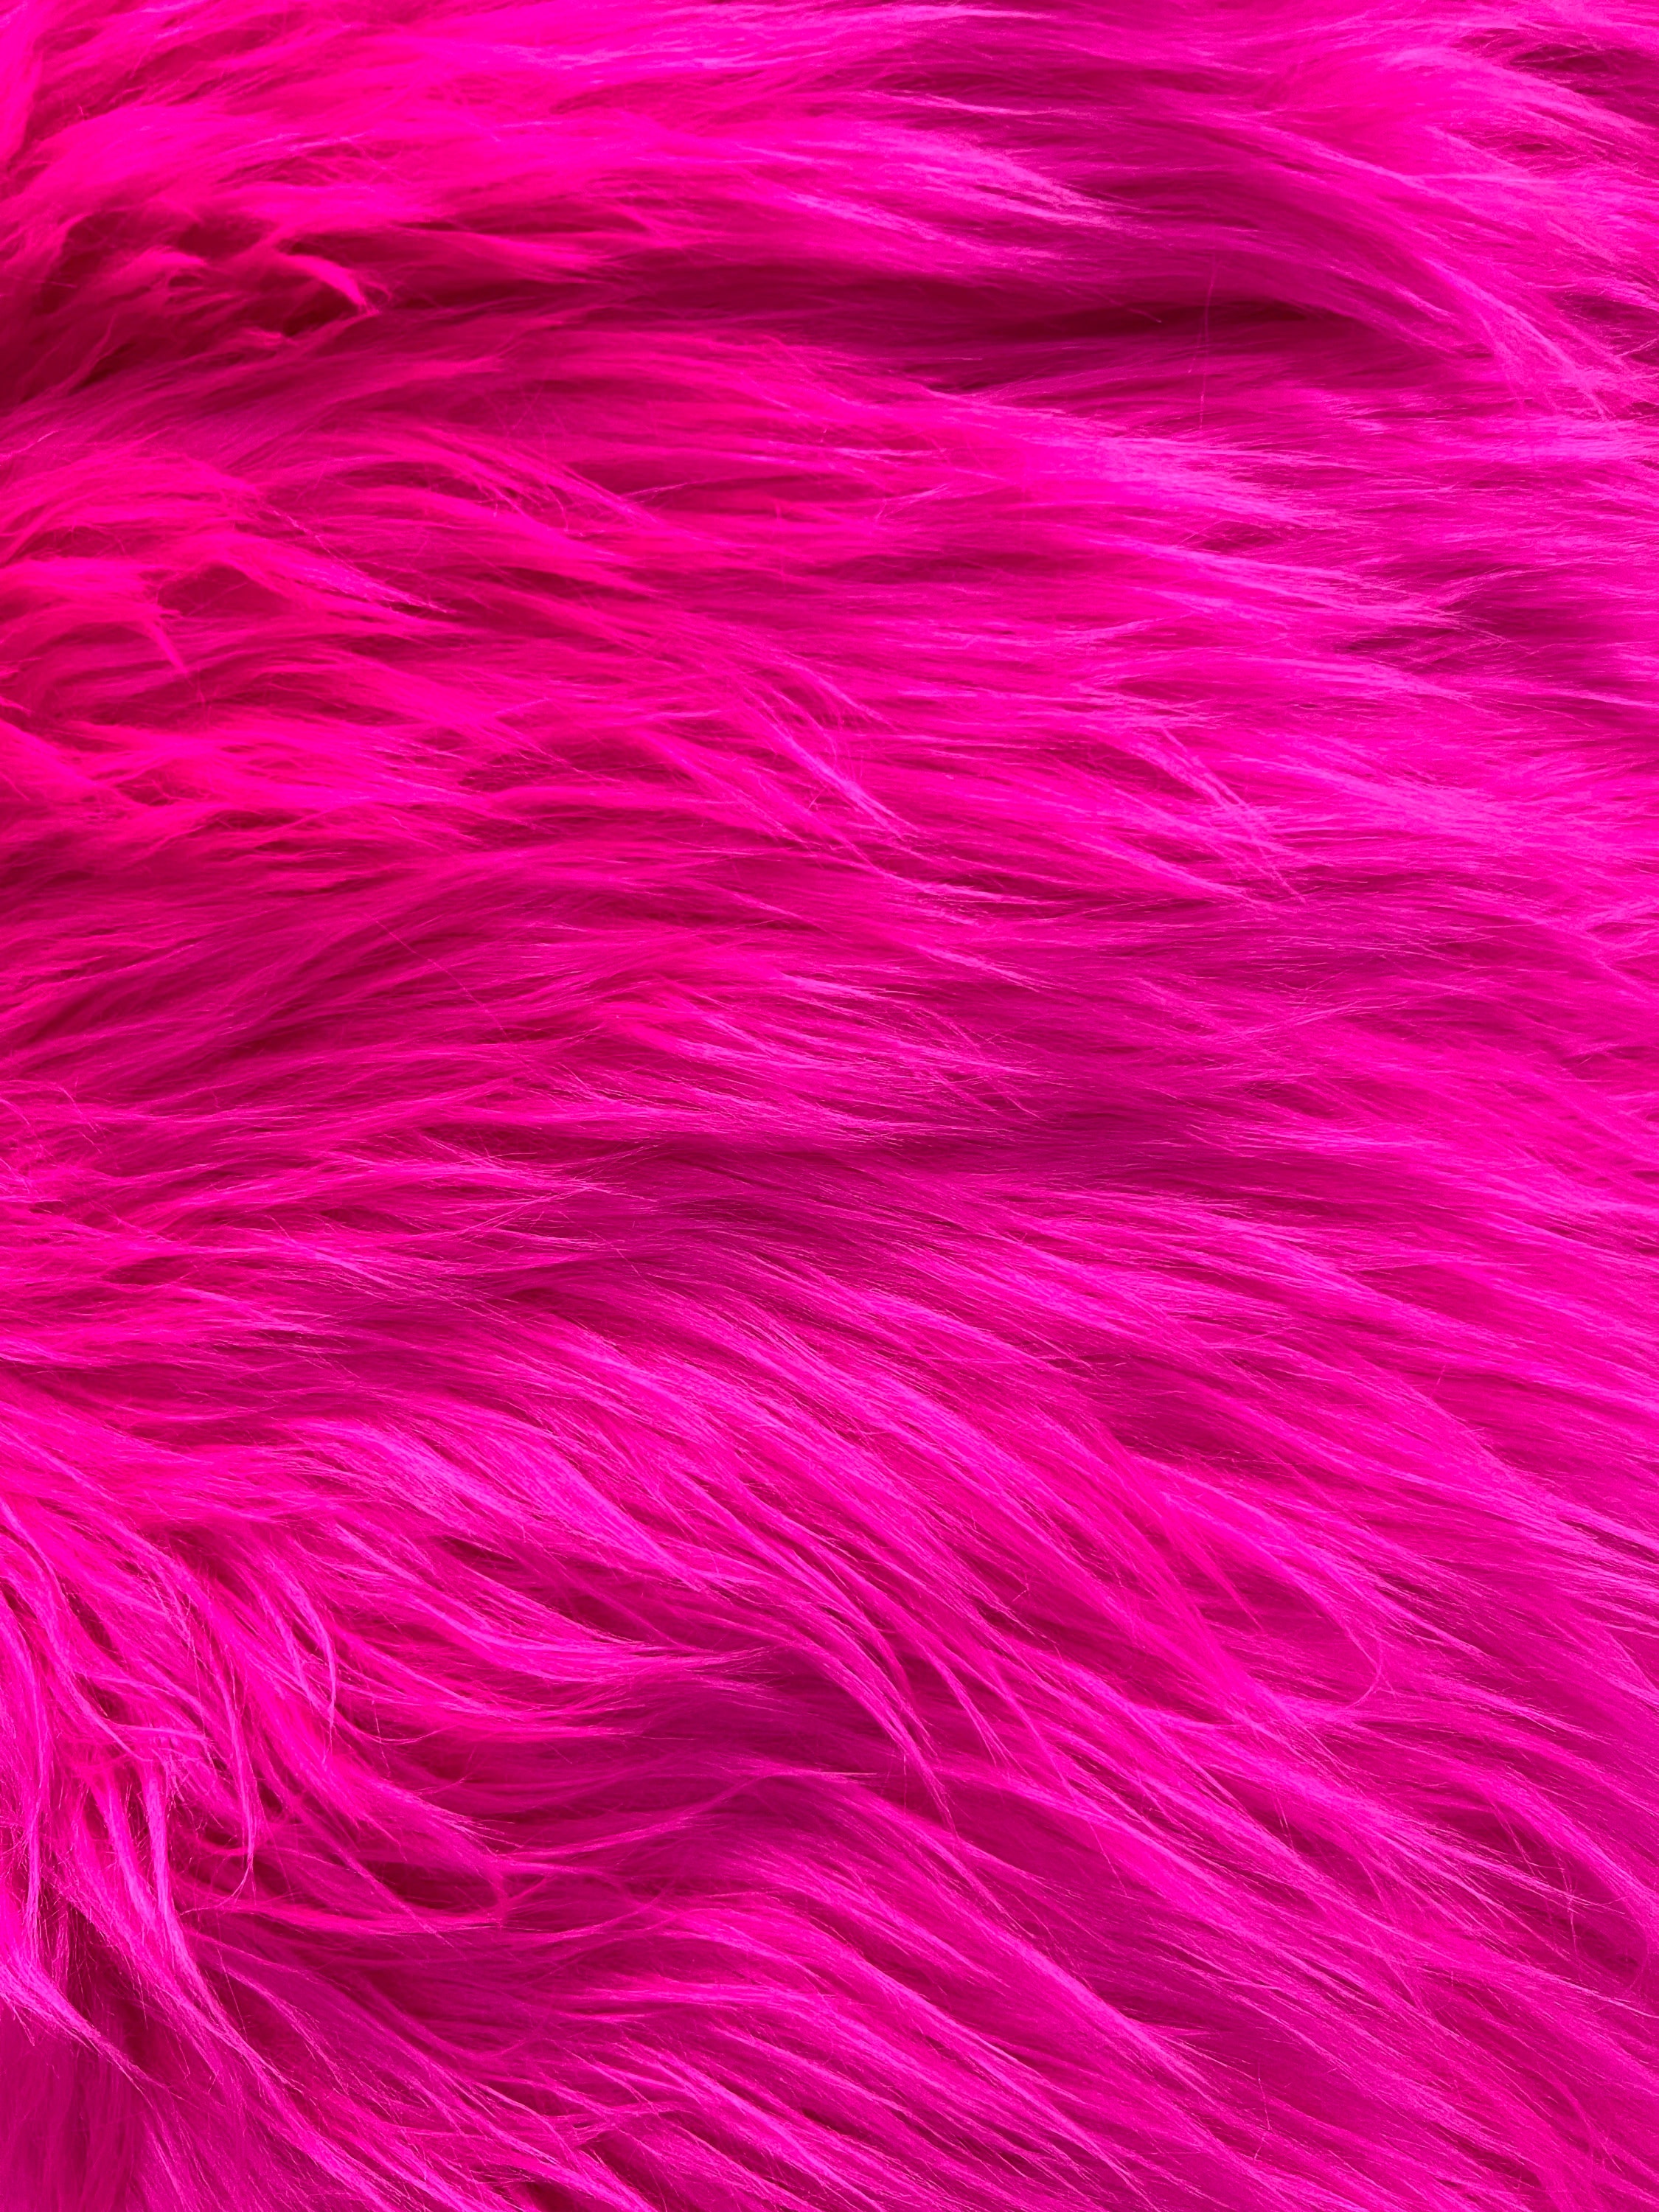  Fluffy Pink